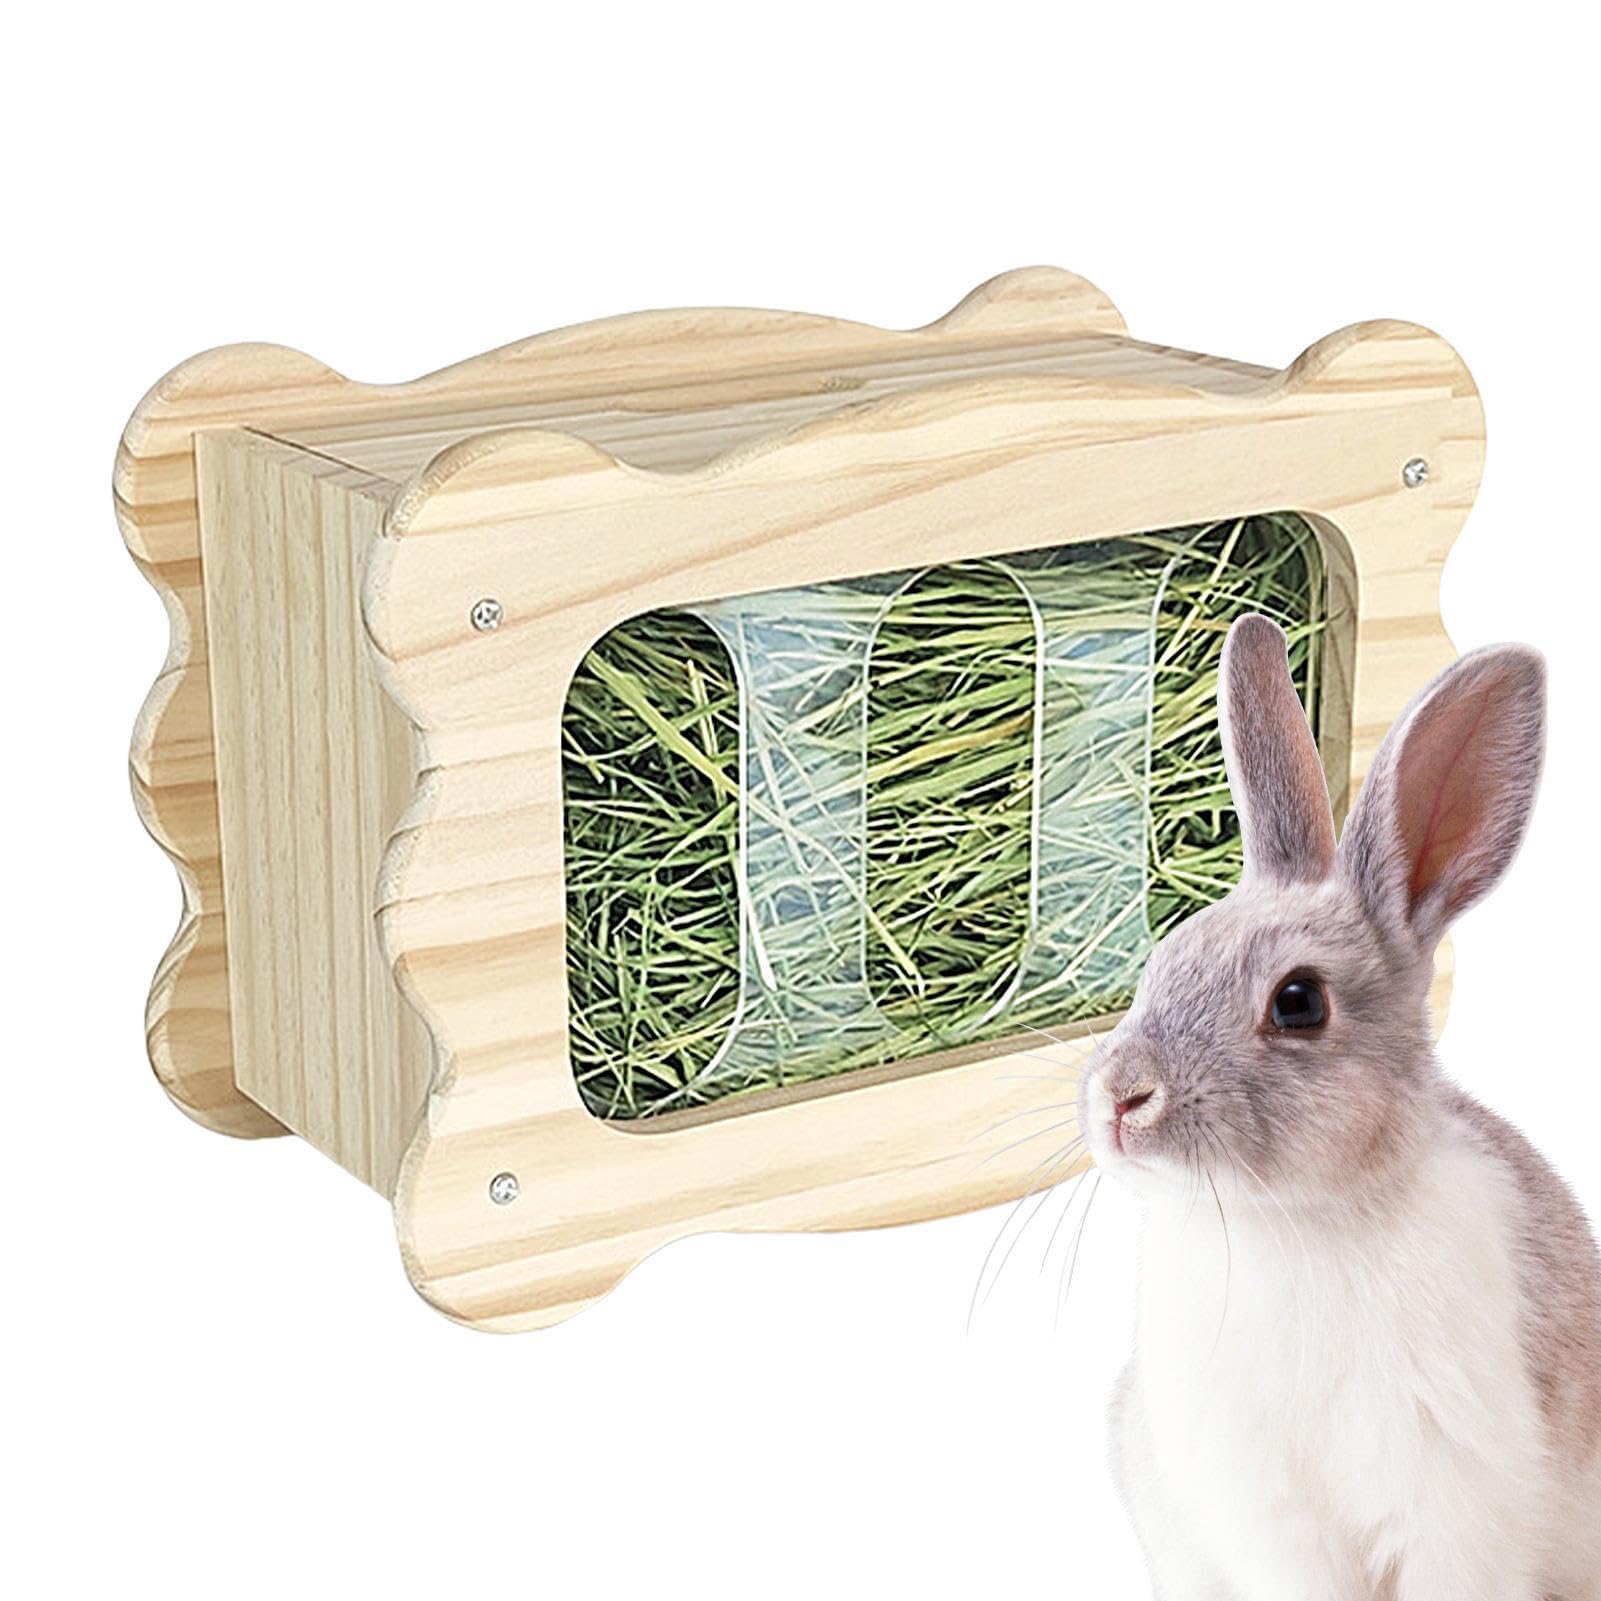 Kaninchen Heuraufe - Sichere Holz Bunny Feeder Krippe - Futterspender Ständer, Bunny Gras Halter, Heu Box für Kleine Haustiere Meerschweinchen Bunny Hamster Käfig Zubehör Teksome